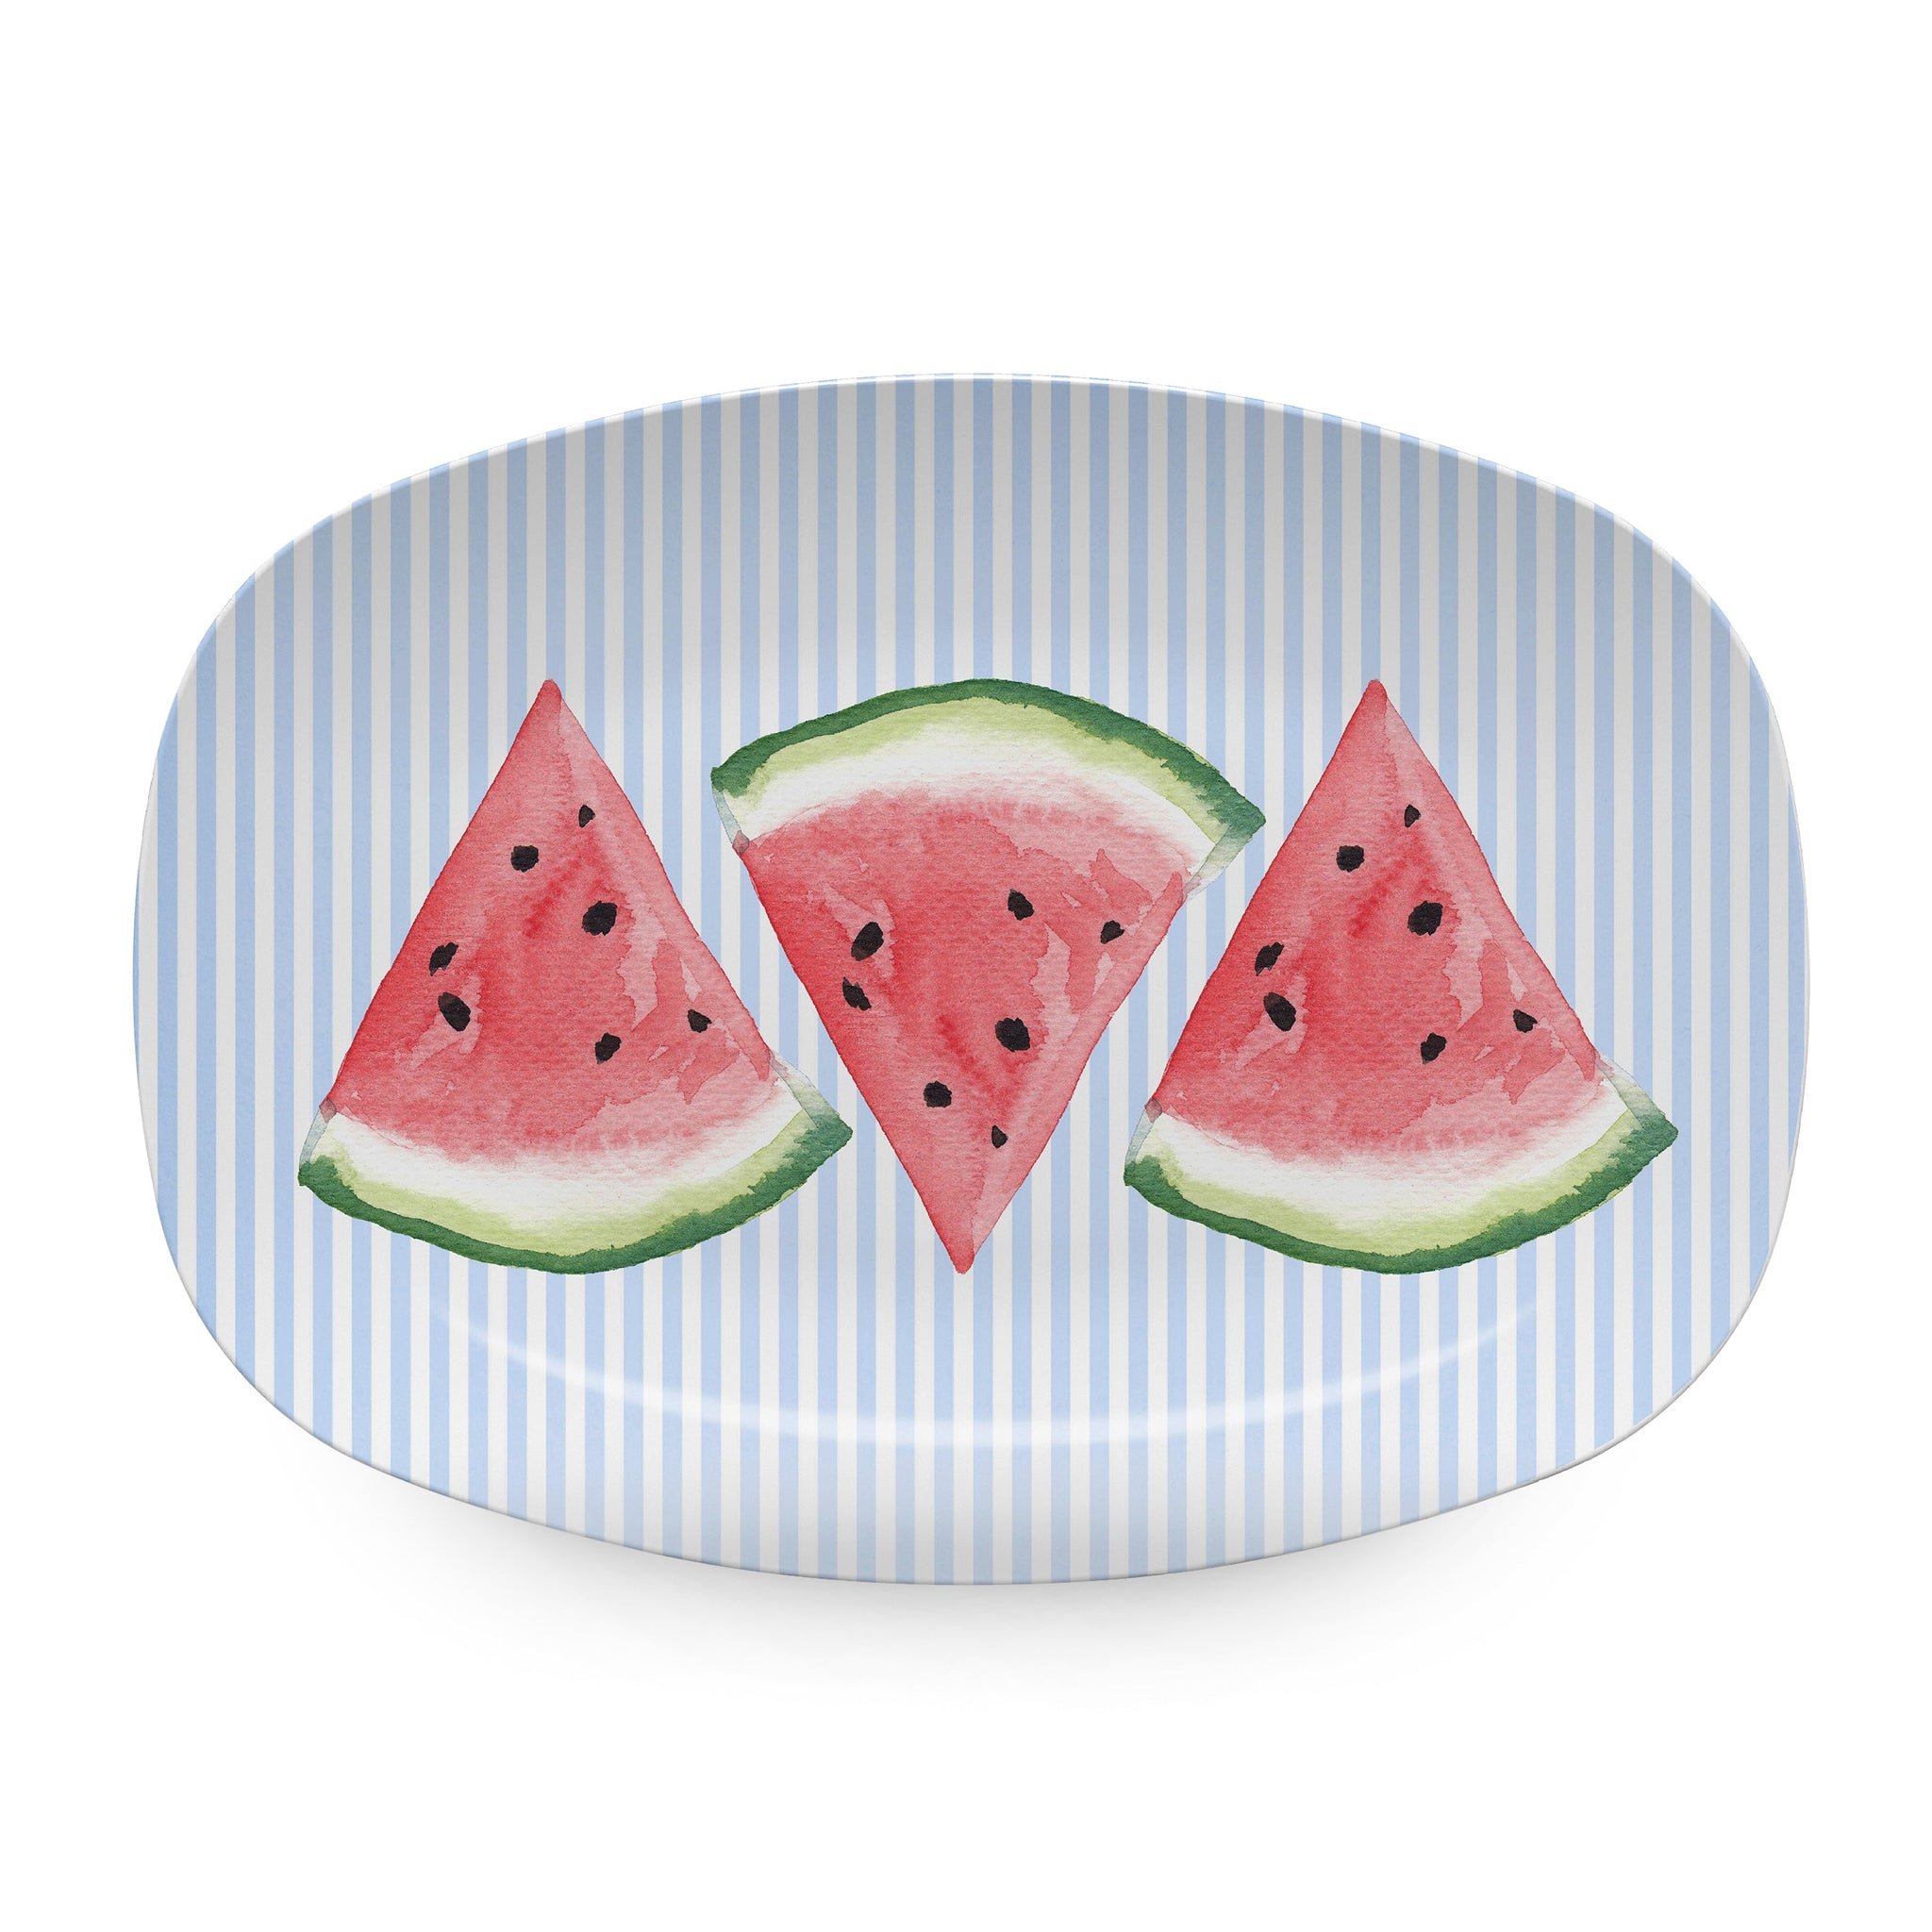 45529 - Juicy Watermelon Platter - $60